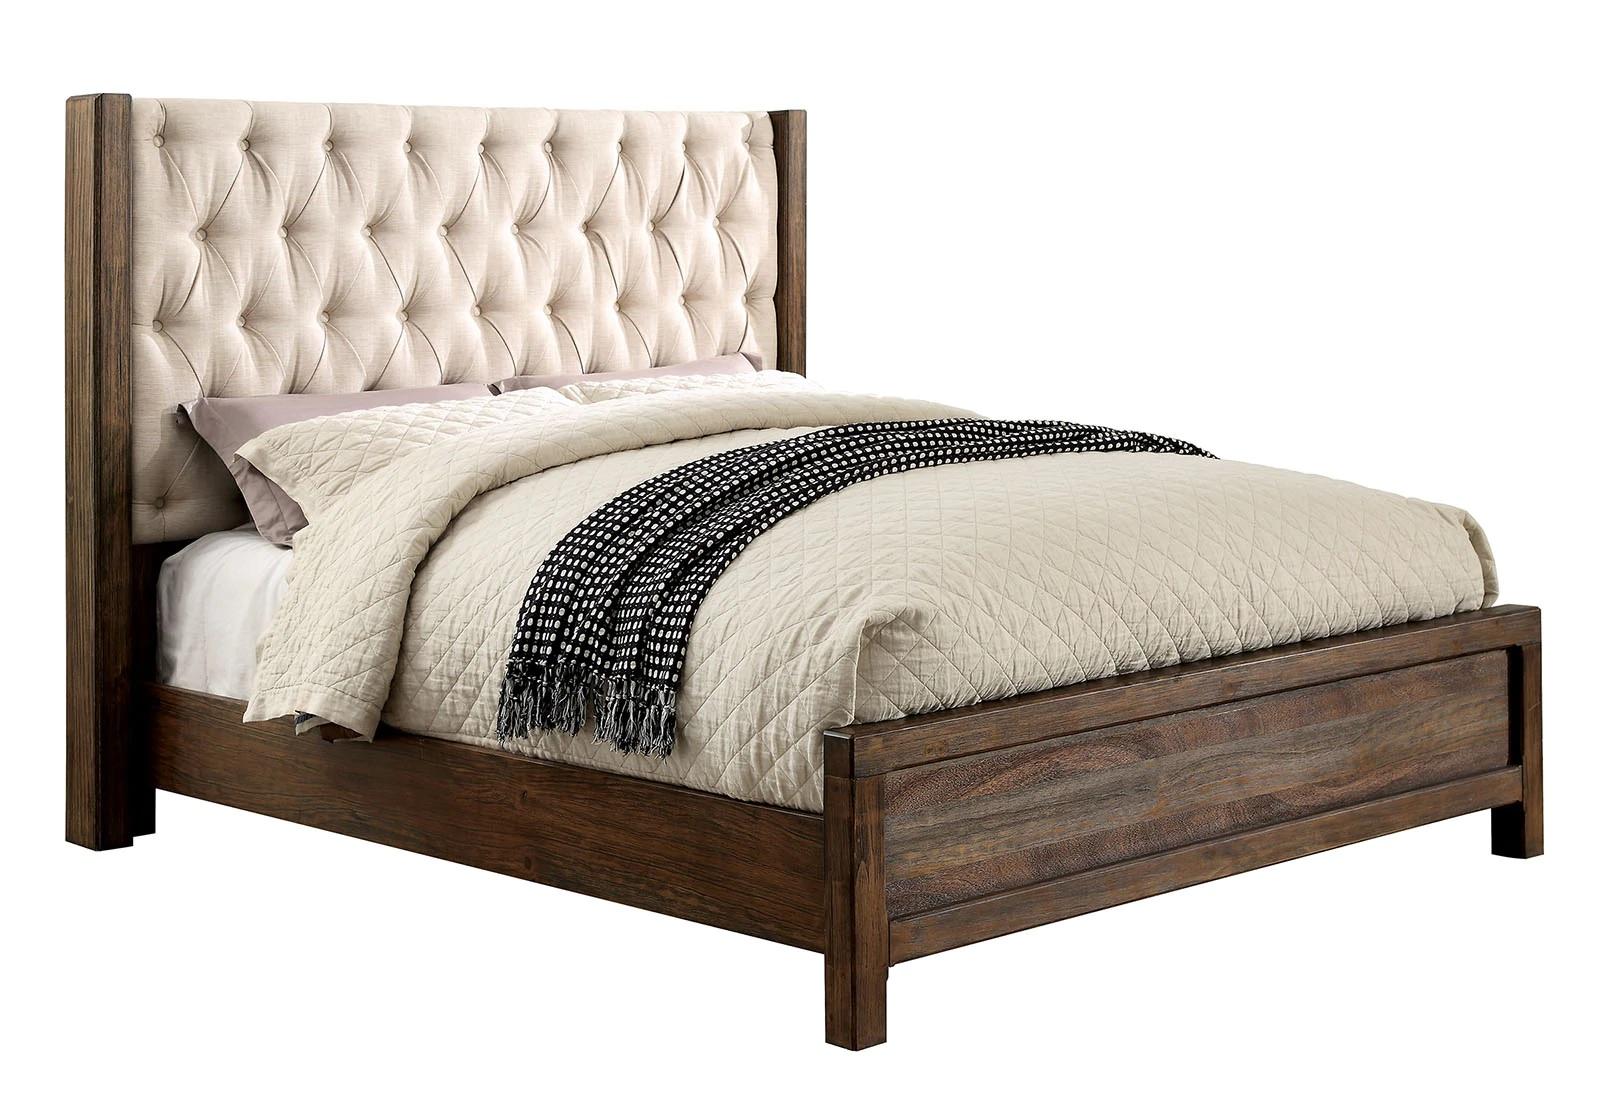 

    
Rustic Natural & Beige Solid Wood Queen Bedroom Set 3pcs Furniture of America CM7577-Q Hutchinson
